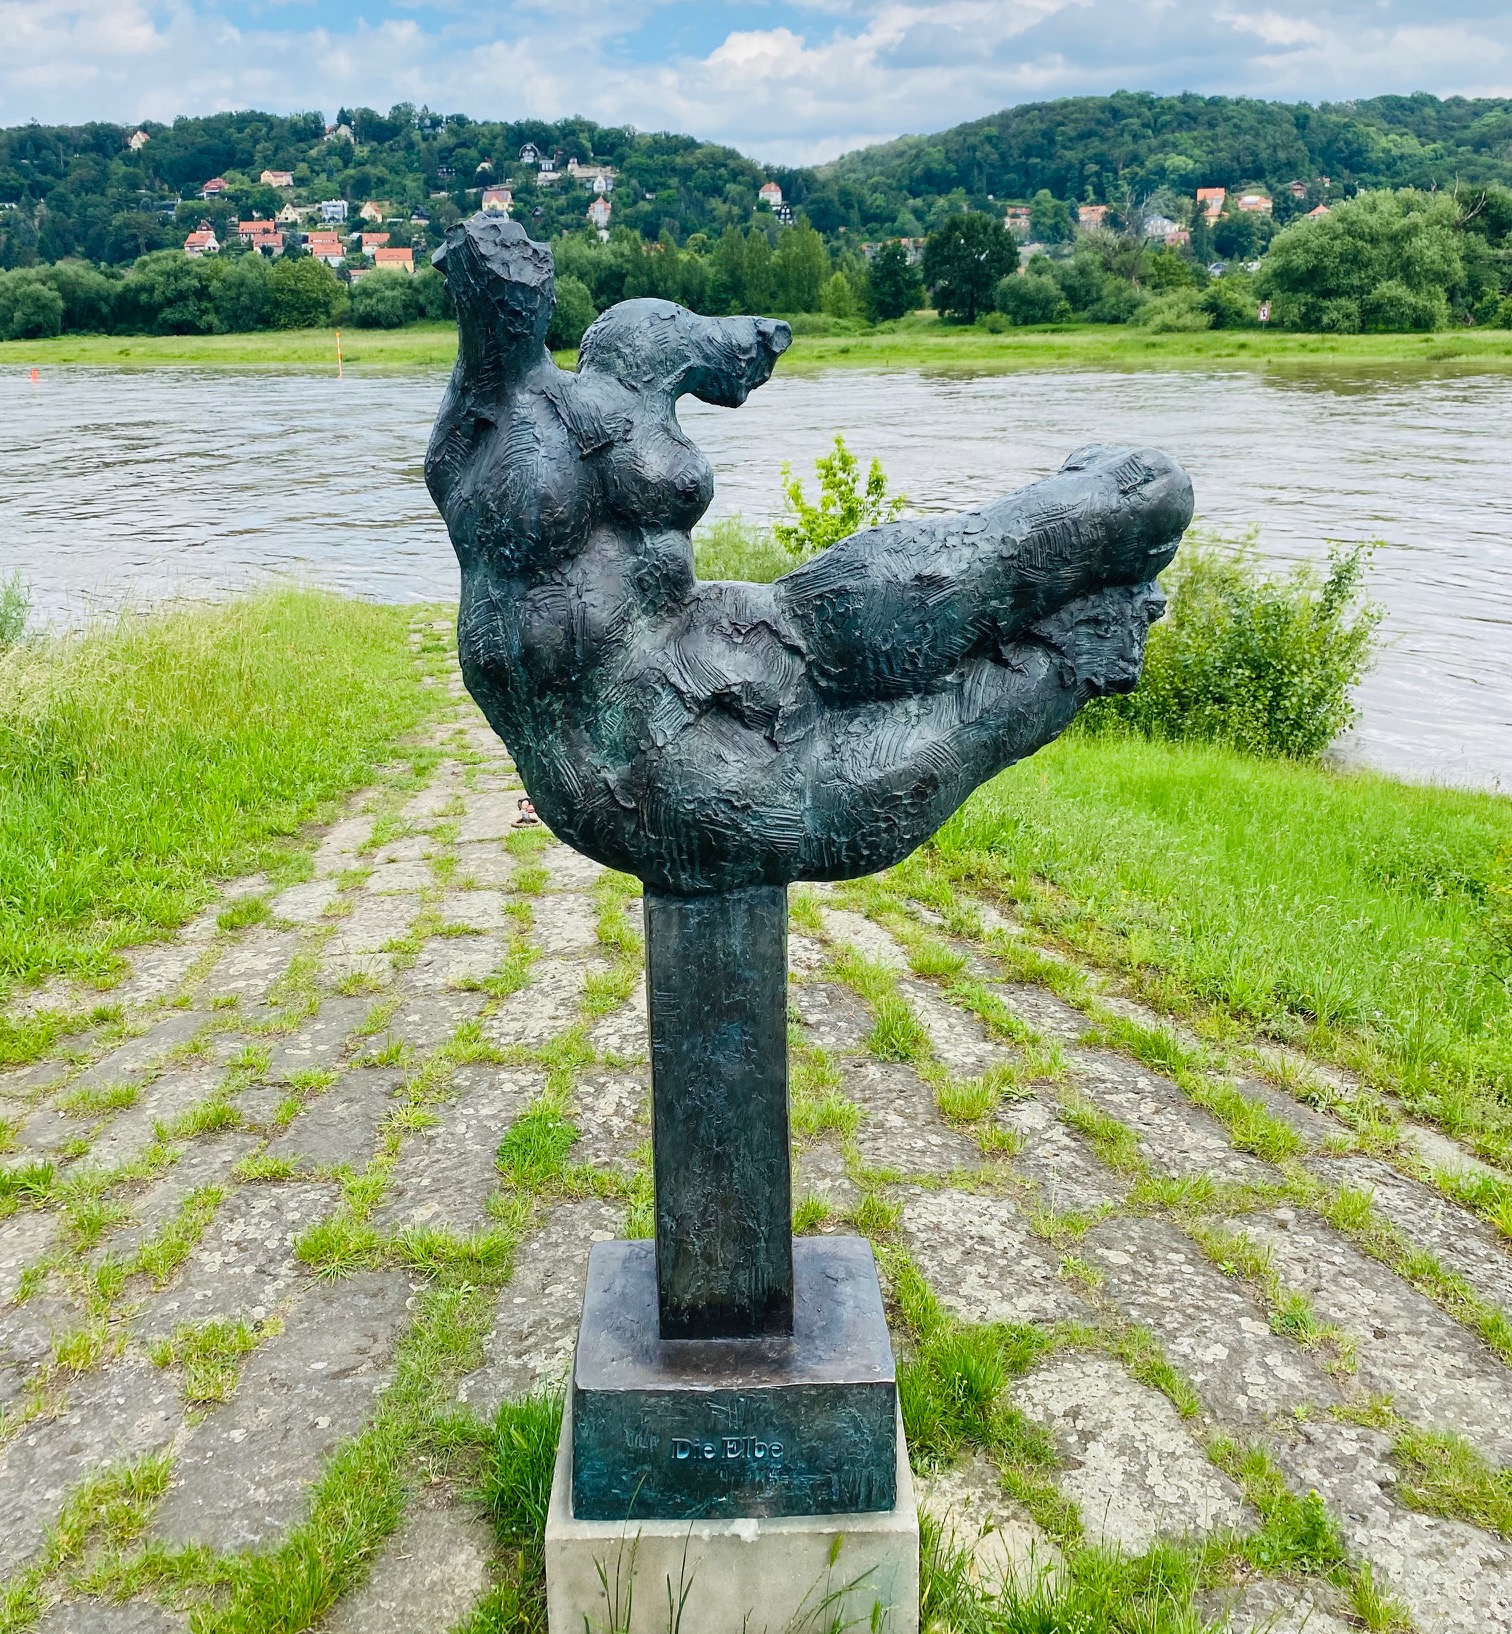 Bronzeplastik "Die Elbe" ist zurück!